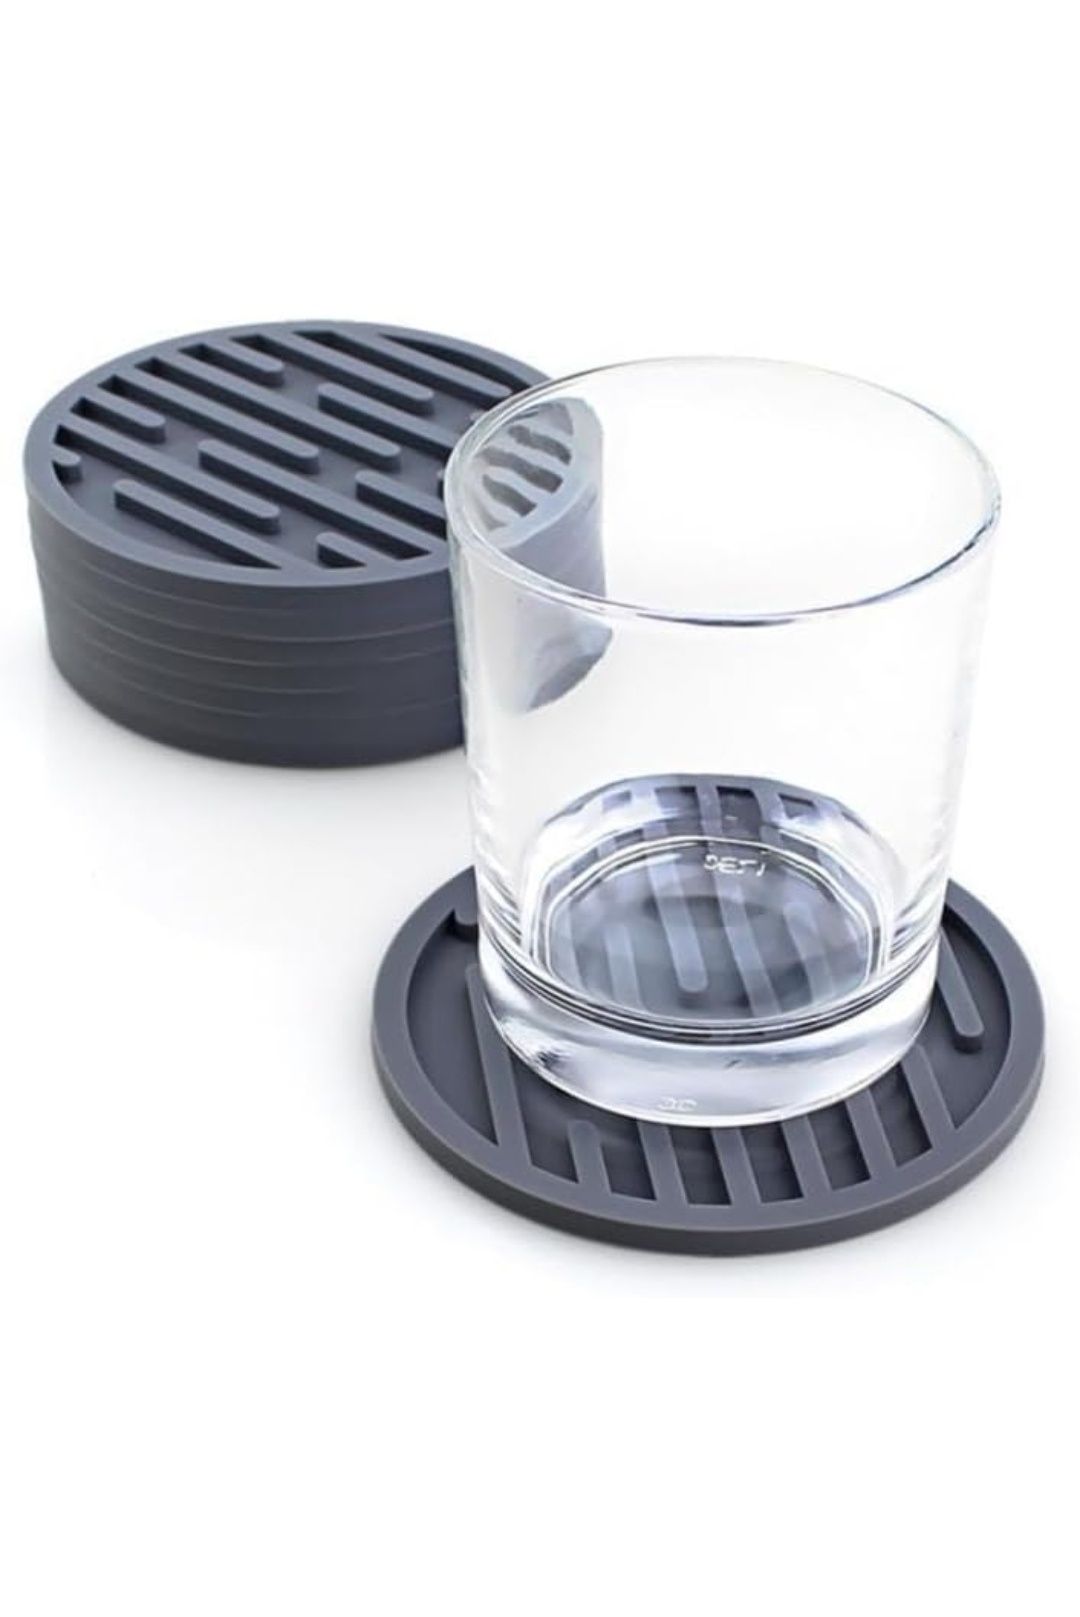 Zestaw 6 podstawek do napojów pod szklanki  podkładki silikonowe 10cm